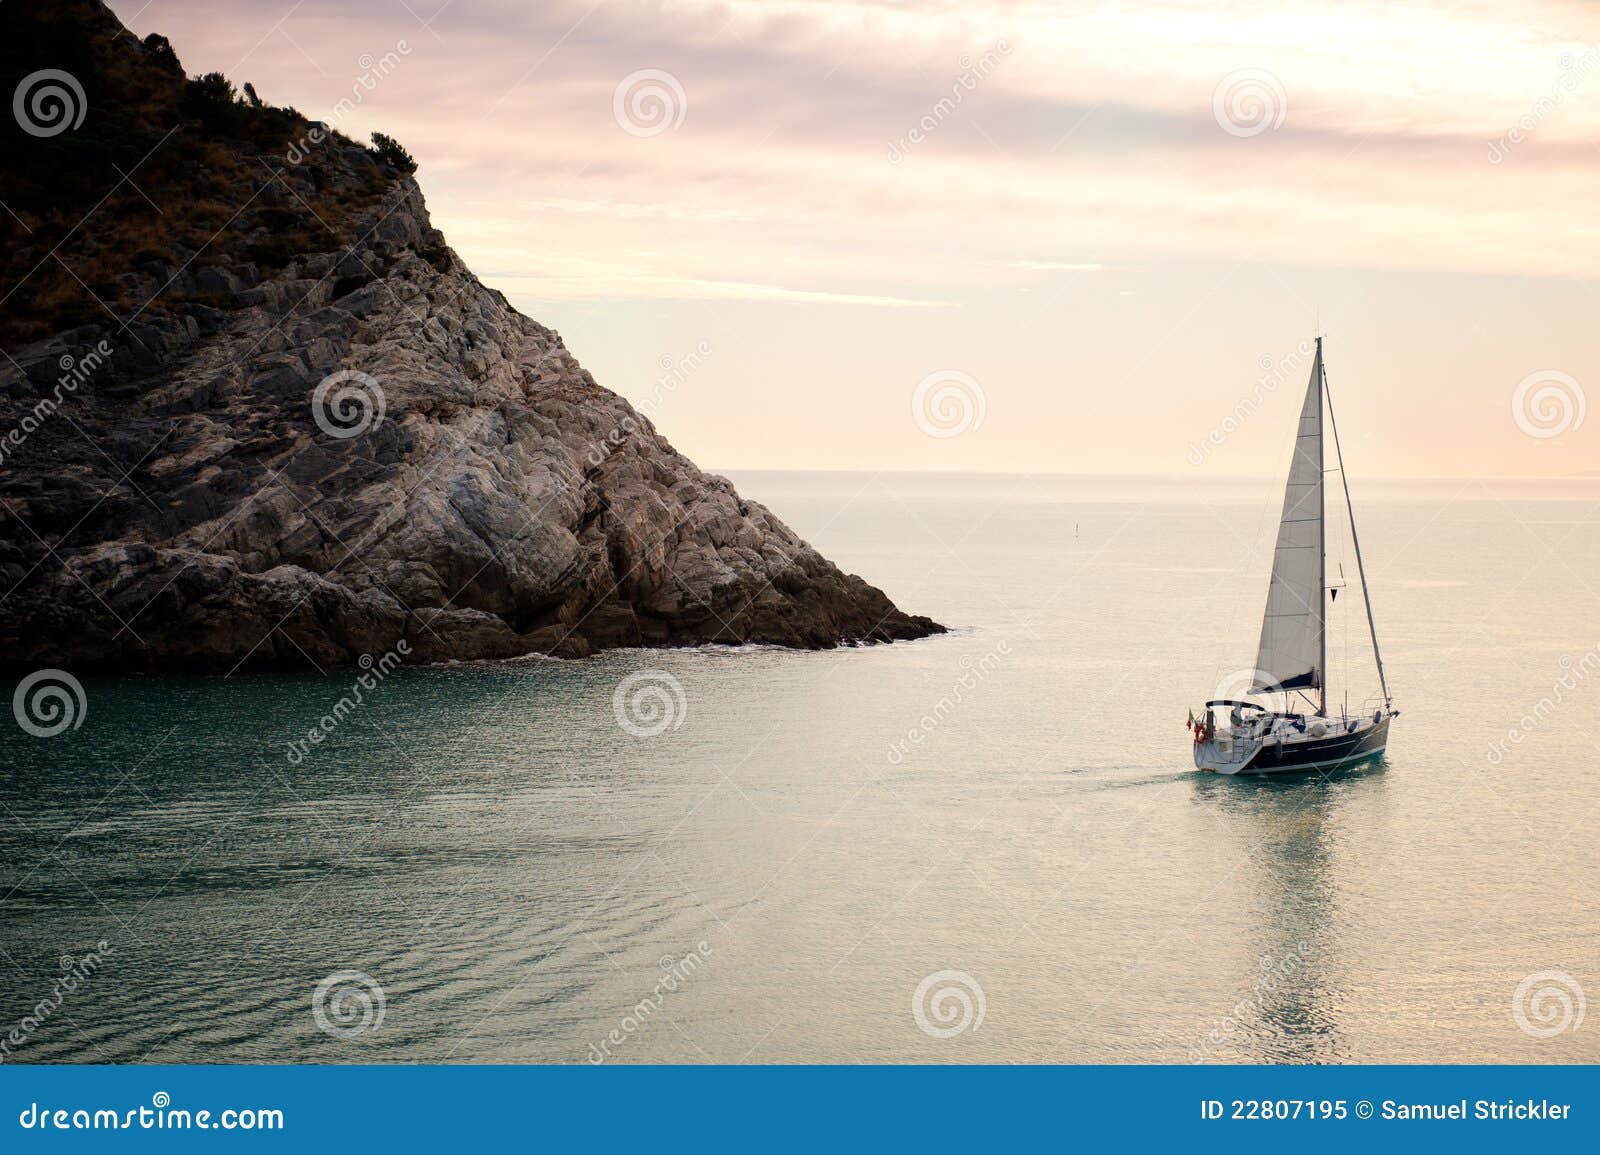 Sailboat At Sunset Royalty Free Stock Photo - Image: 22807195